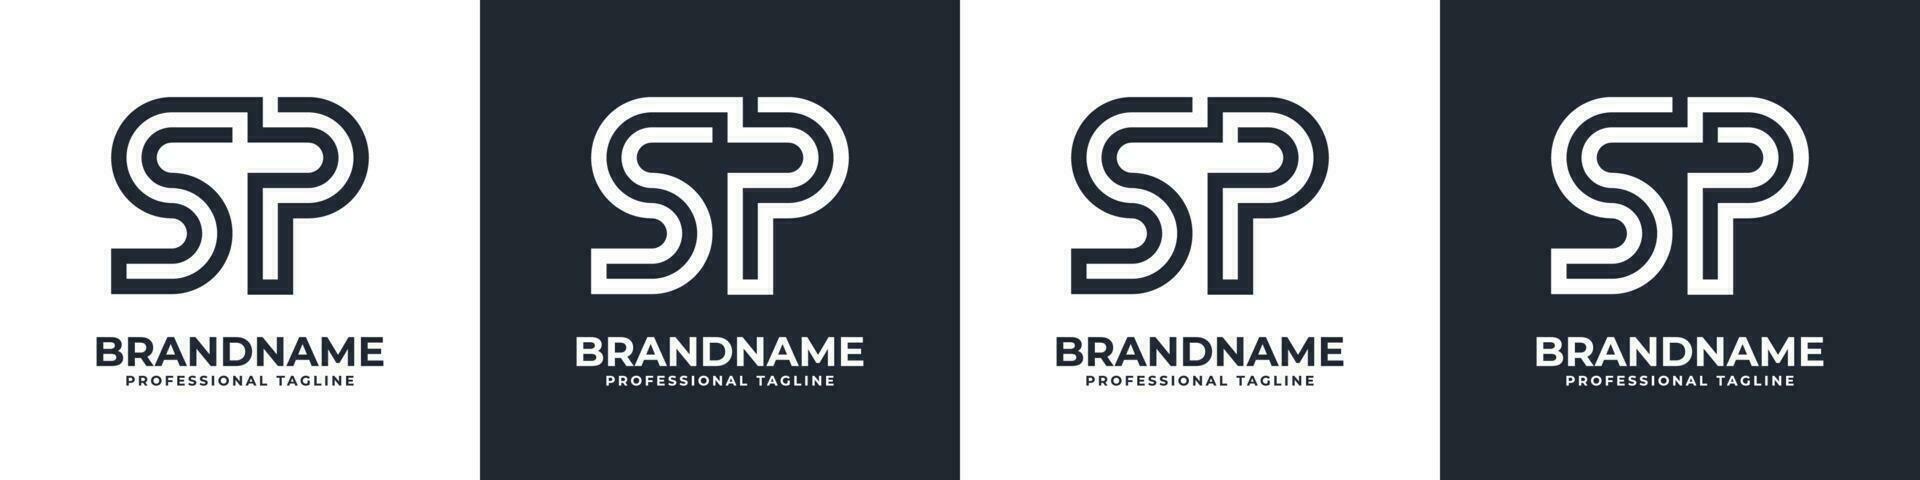 semplice sp monogramma logo, adatto per qualunque attività commerciale con sp o ps iniziale. vettore